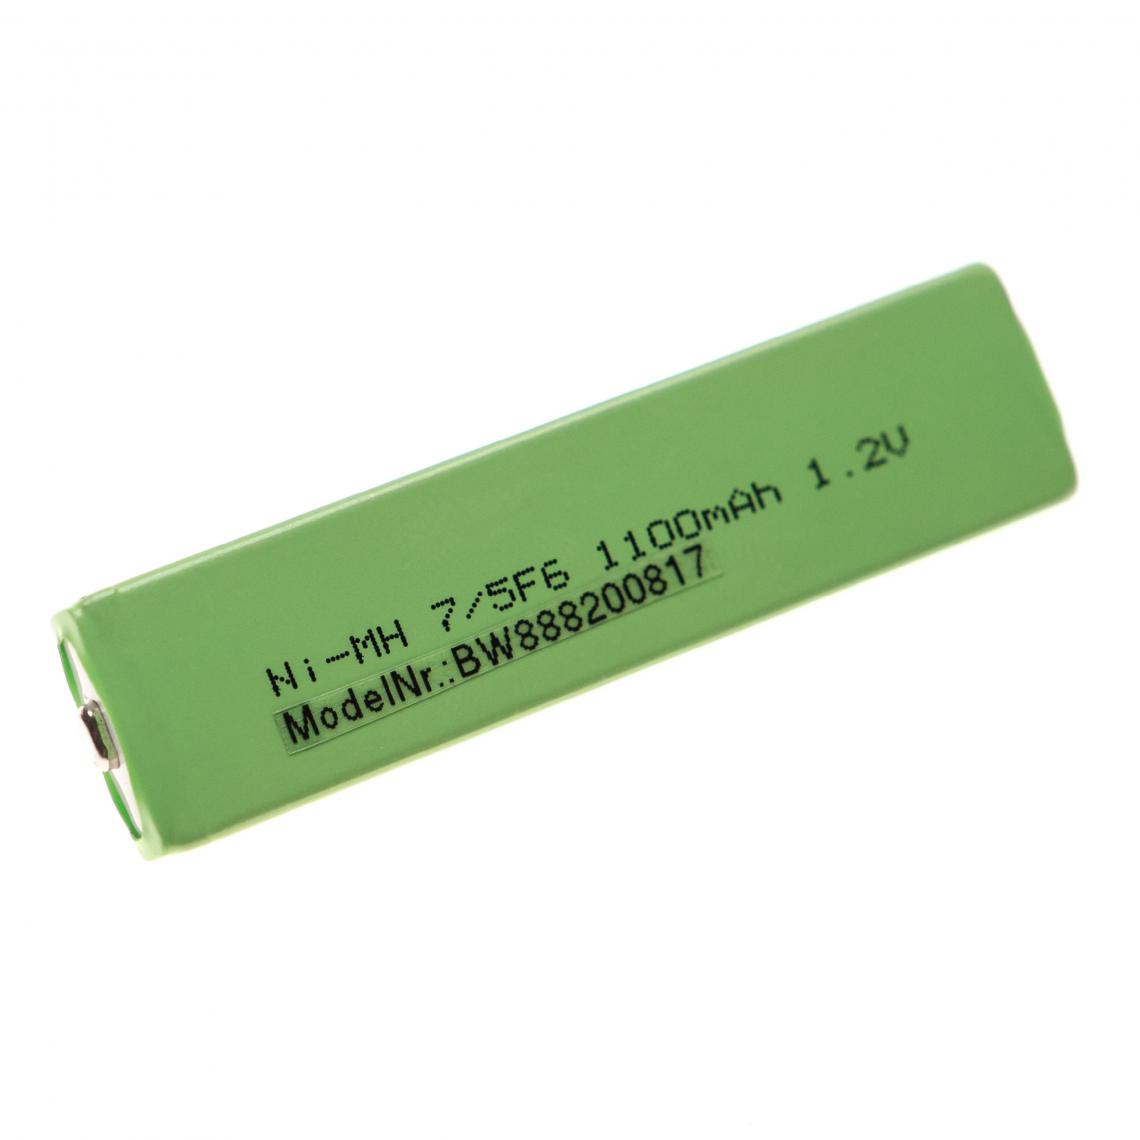 Vhbw - vhbw Cellules de batterie compatible avec Sony NH-14WM, NW-MS11, NW-MS9 baladeur, Minidisc (1100mAh, 1,2V, NiMH), bouton Top, 7/5F6 - Batteries électroniques